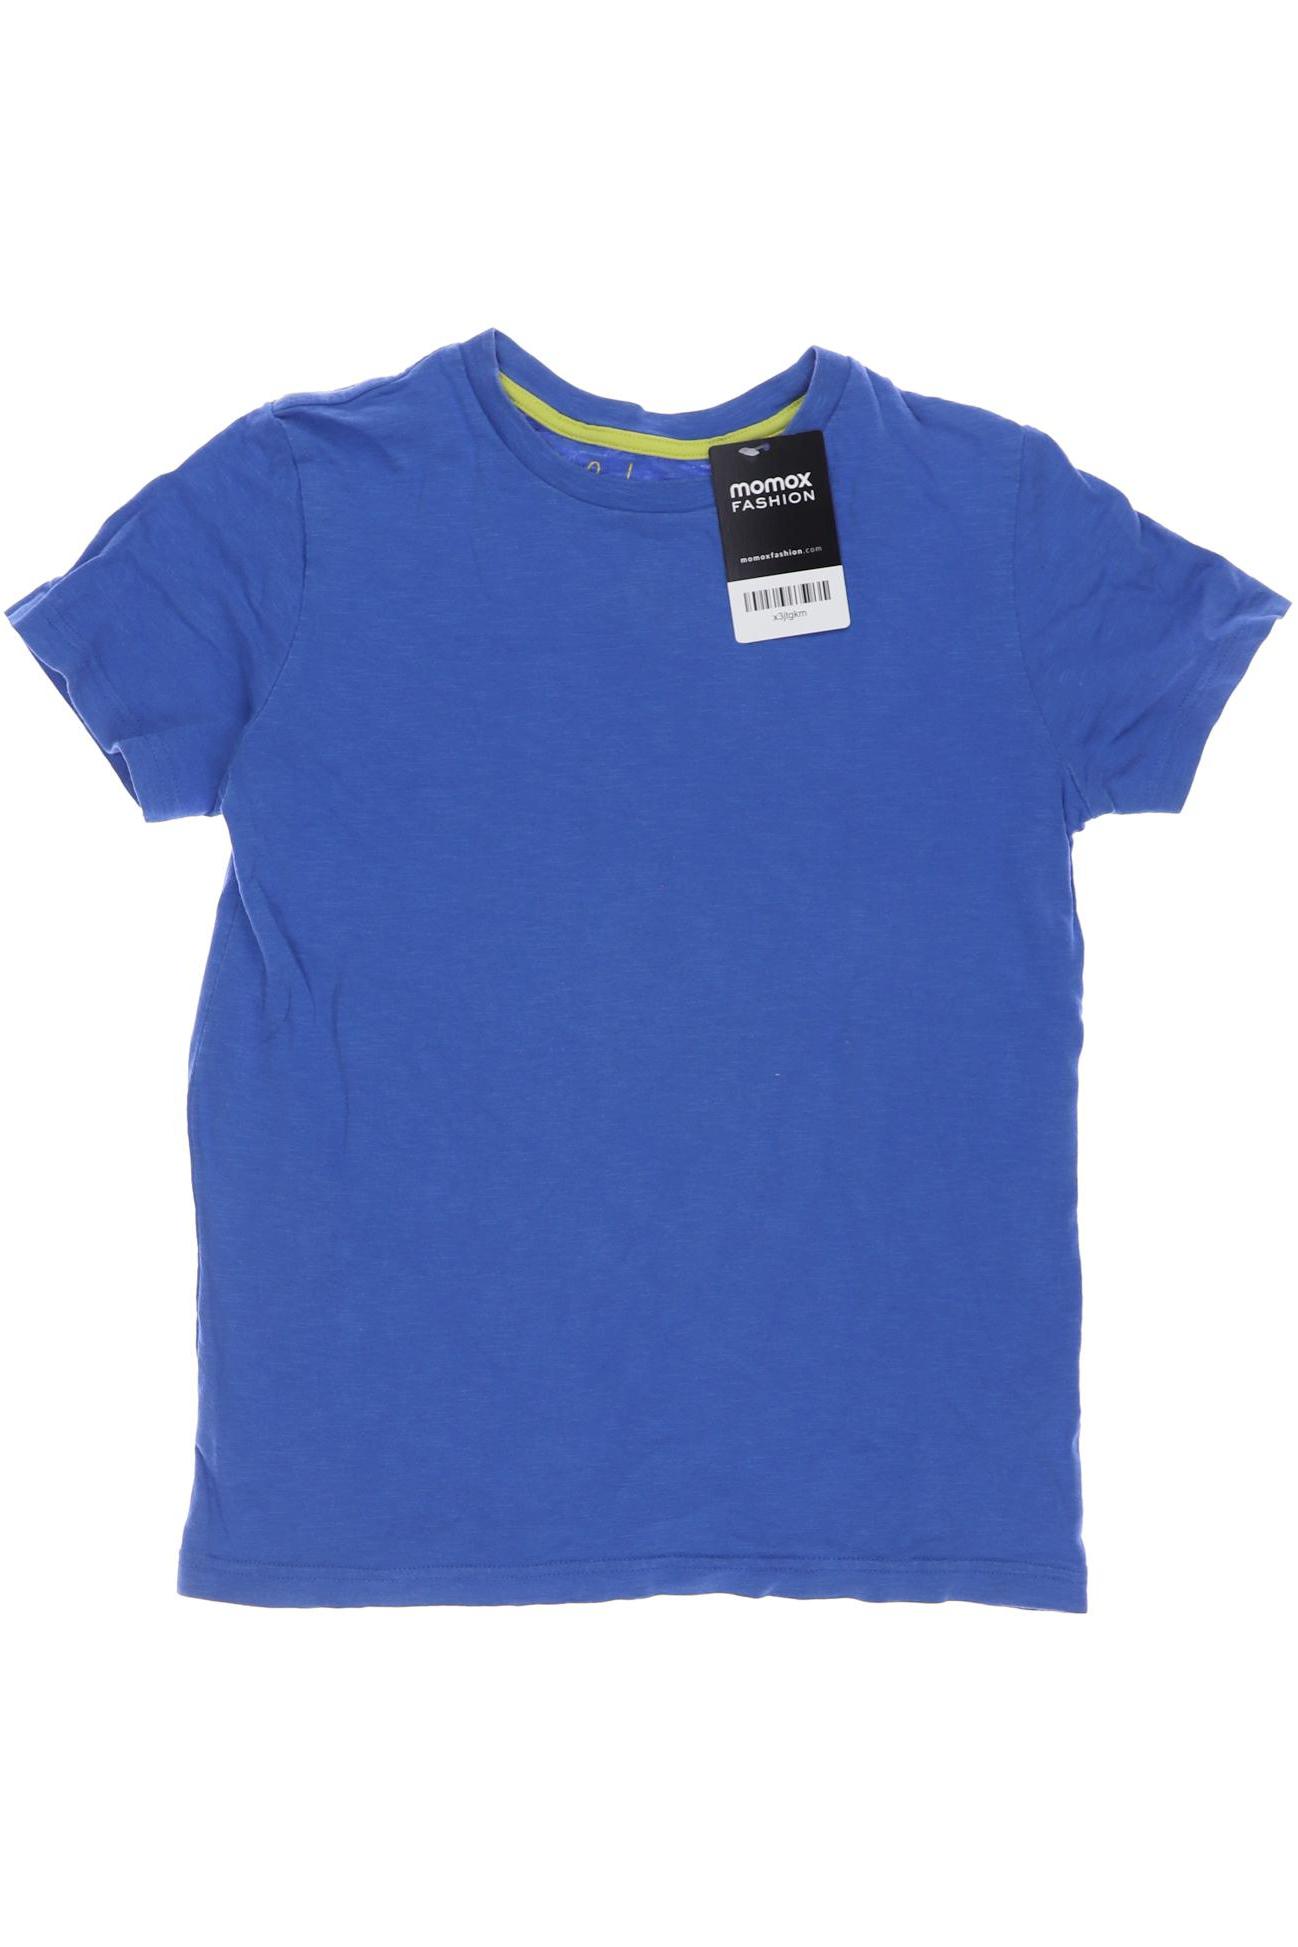 Boden Herren T-Shirt, blau, Gr. 140 von Boden